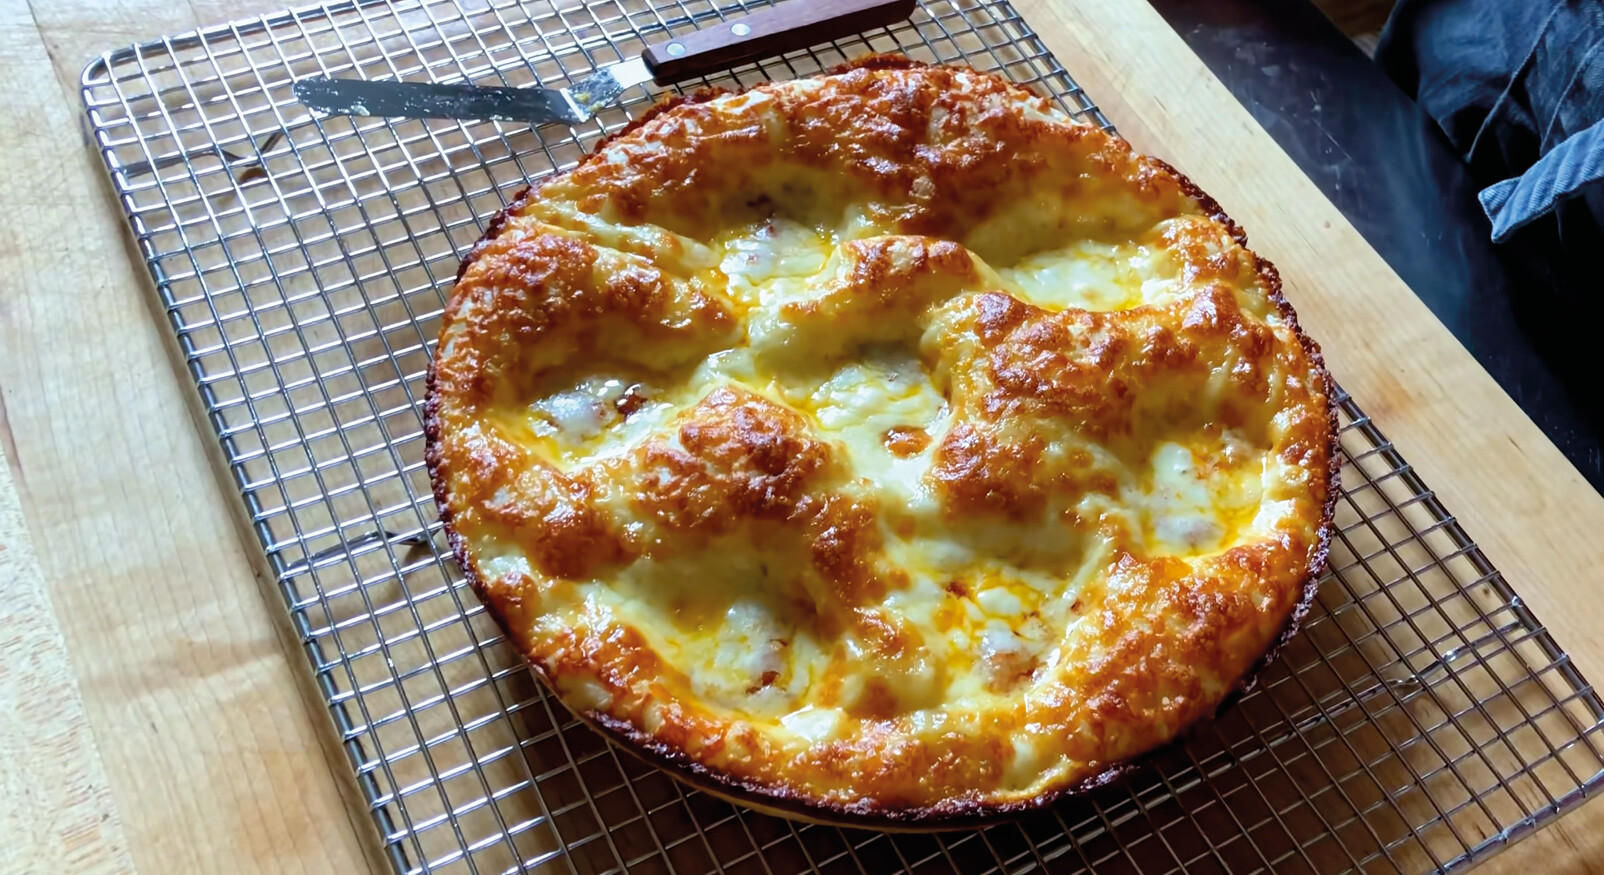 panpizza recept uit de oven